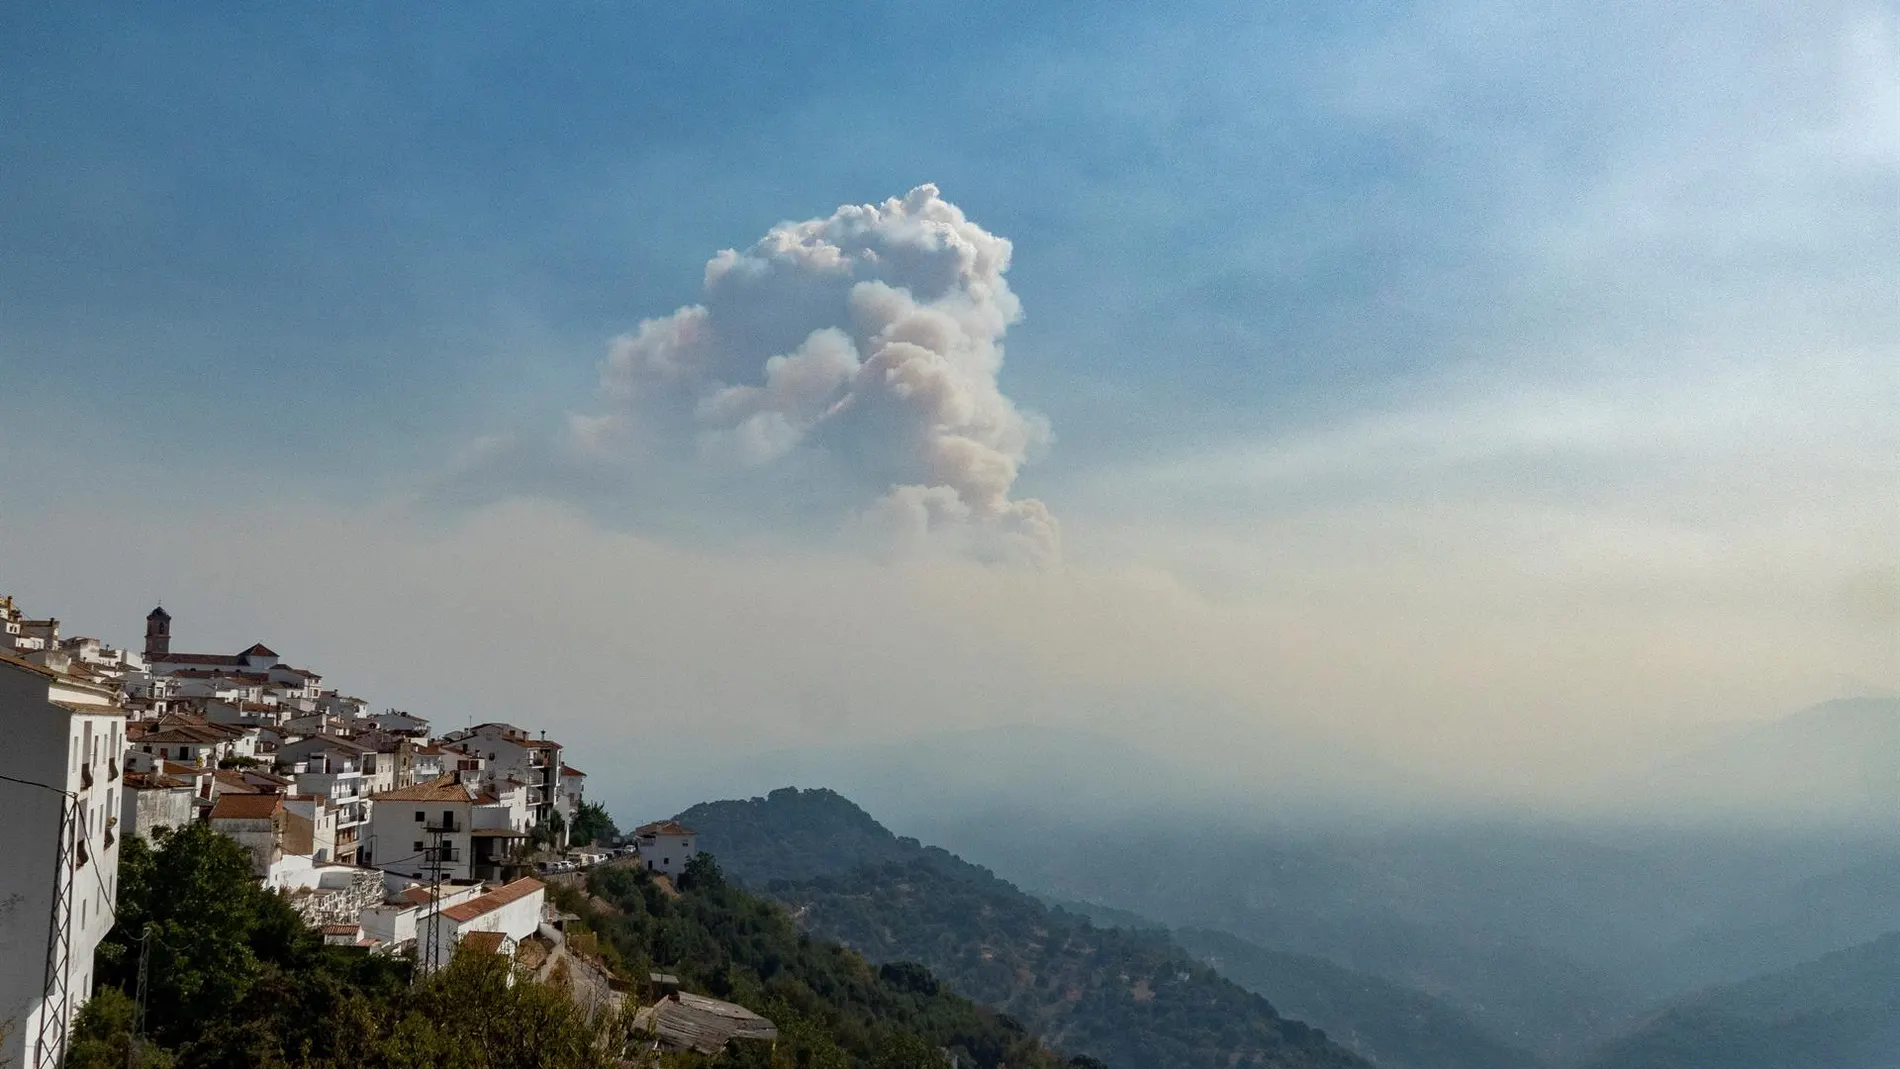 Vista del pueblo de Algatocín junto a una nube de humo que proviene del incendio